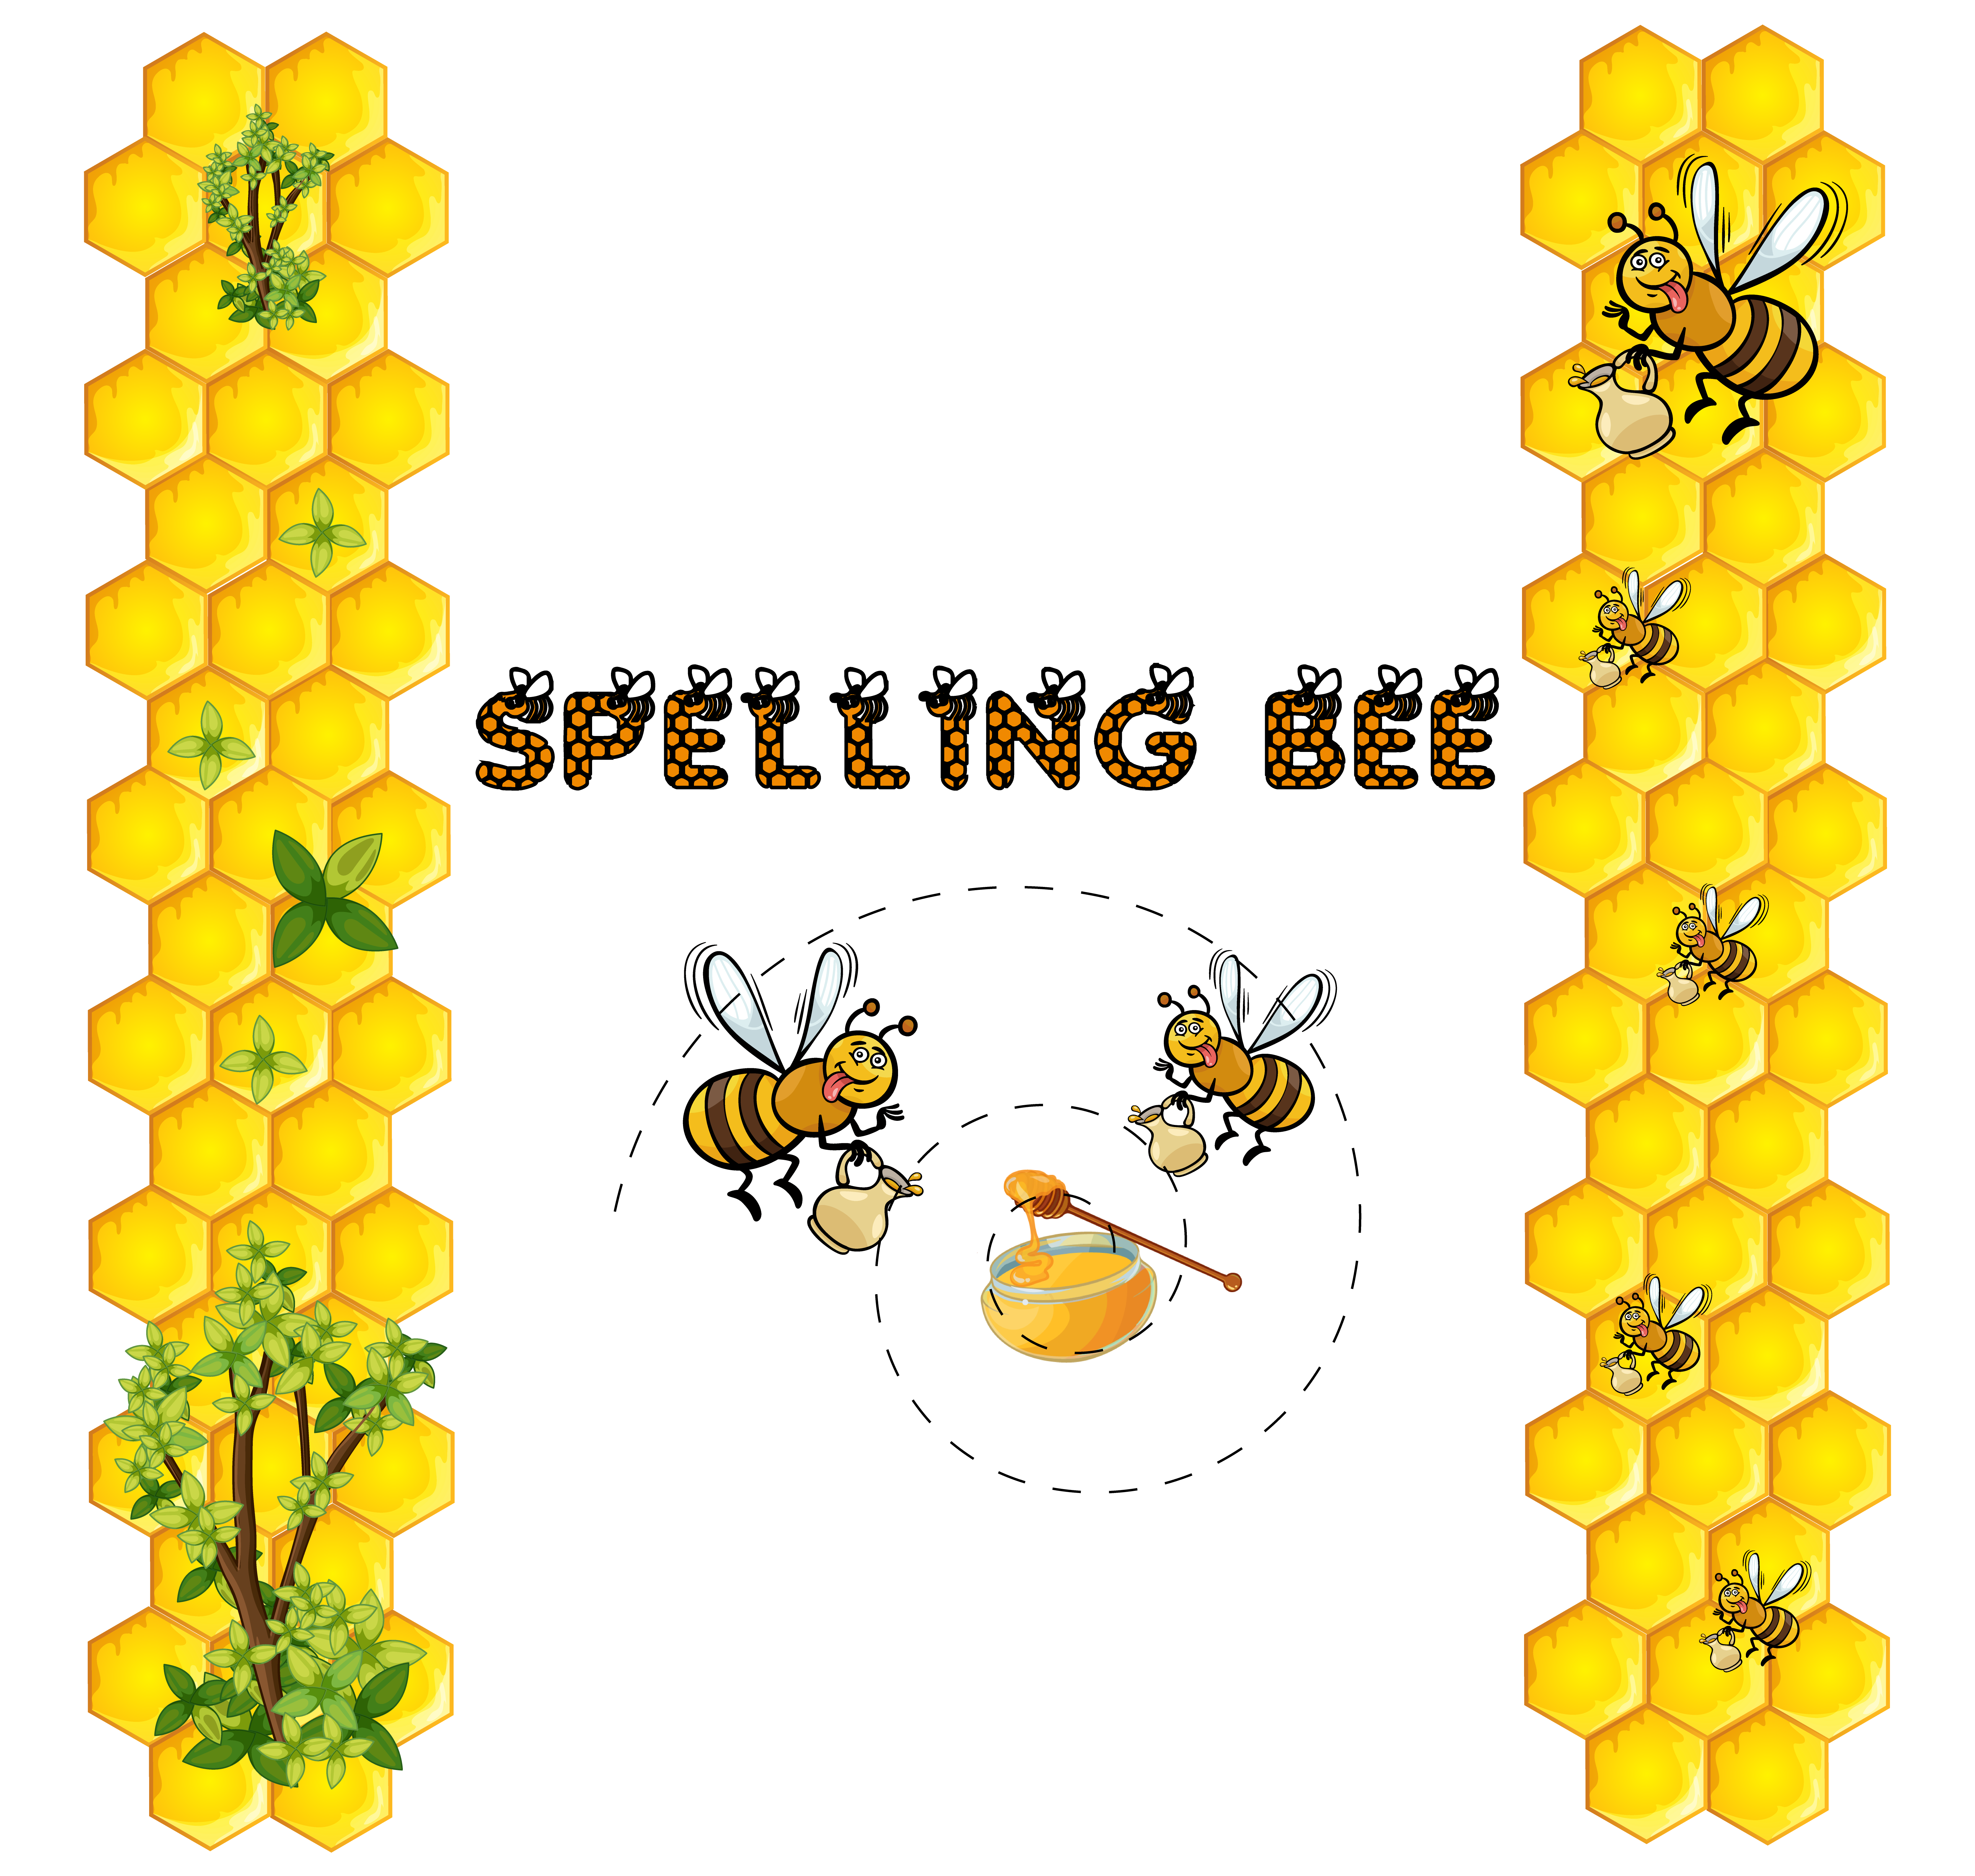 Spelling Bee SpellQuiz